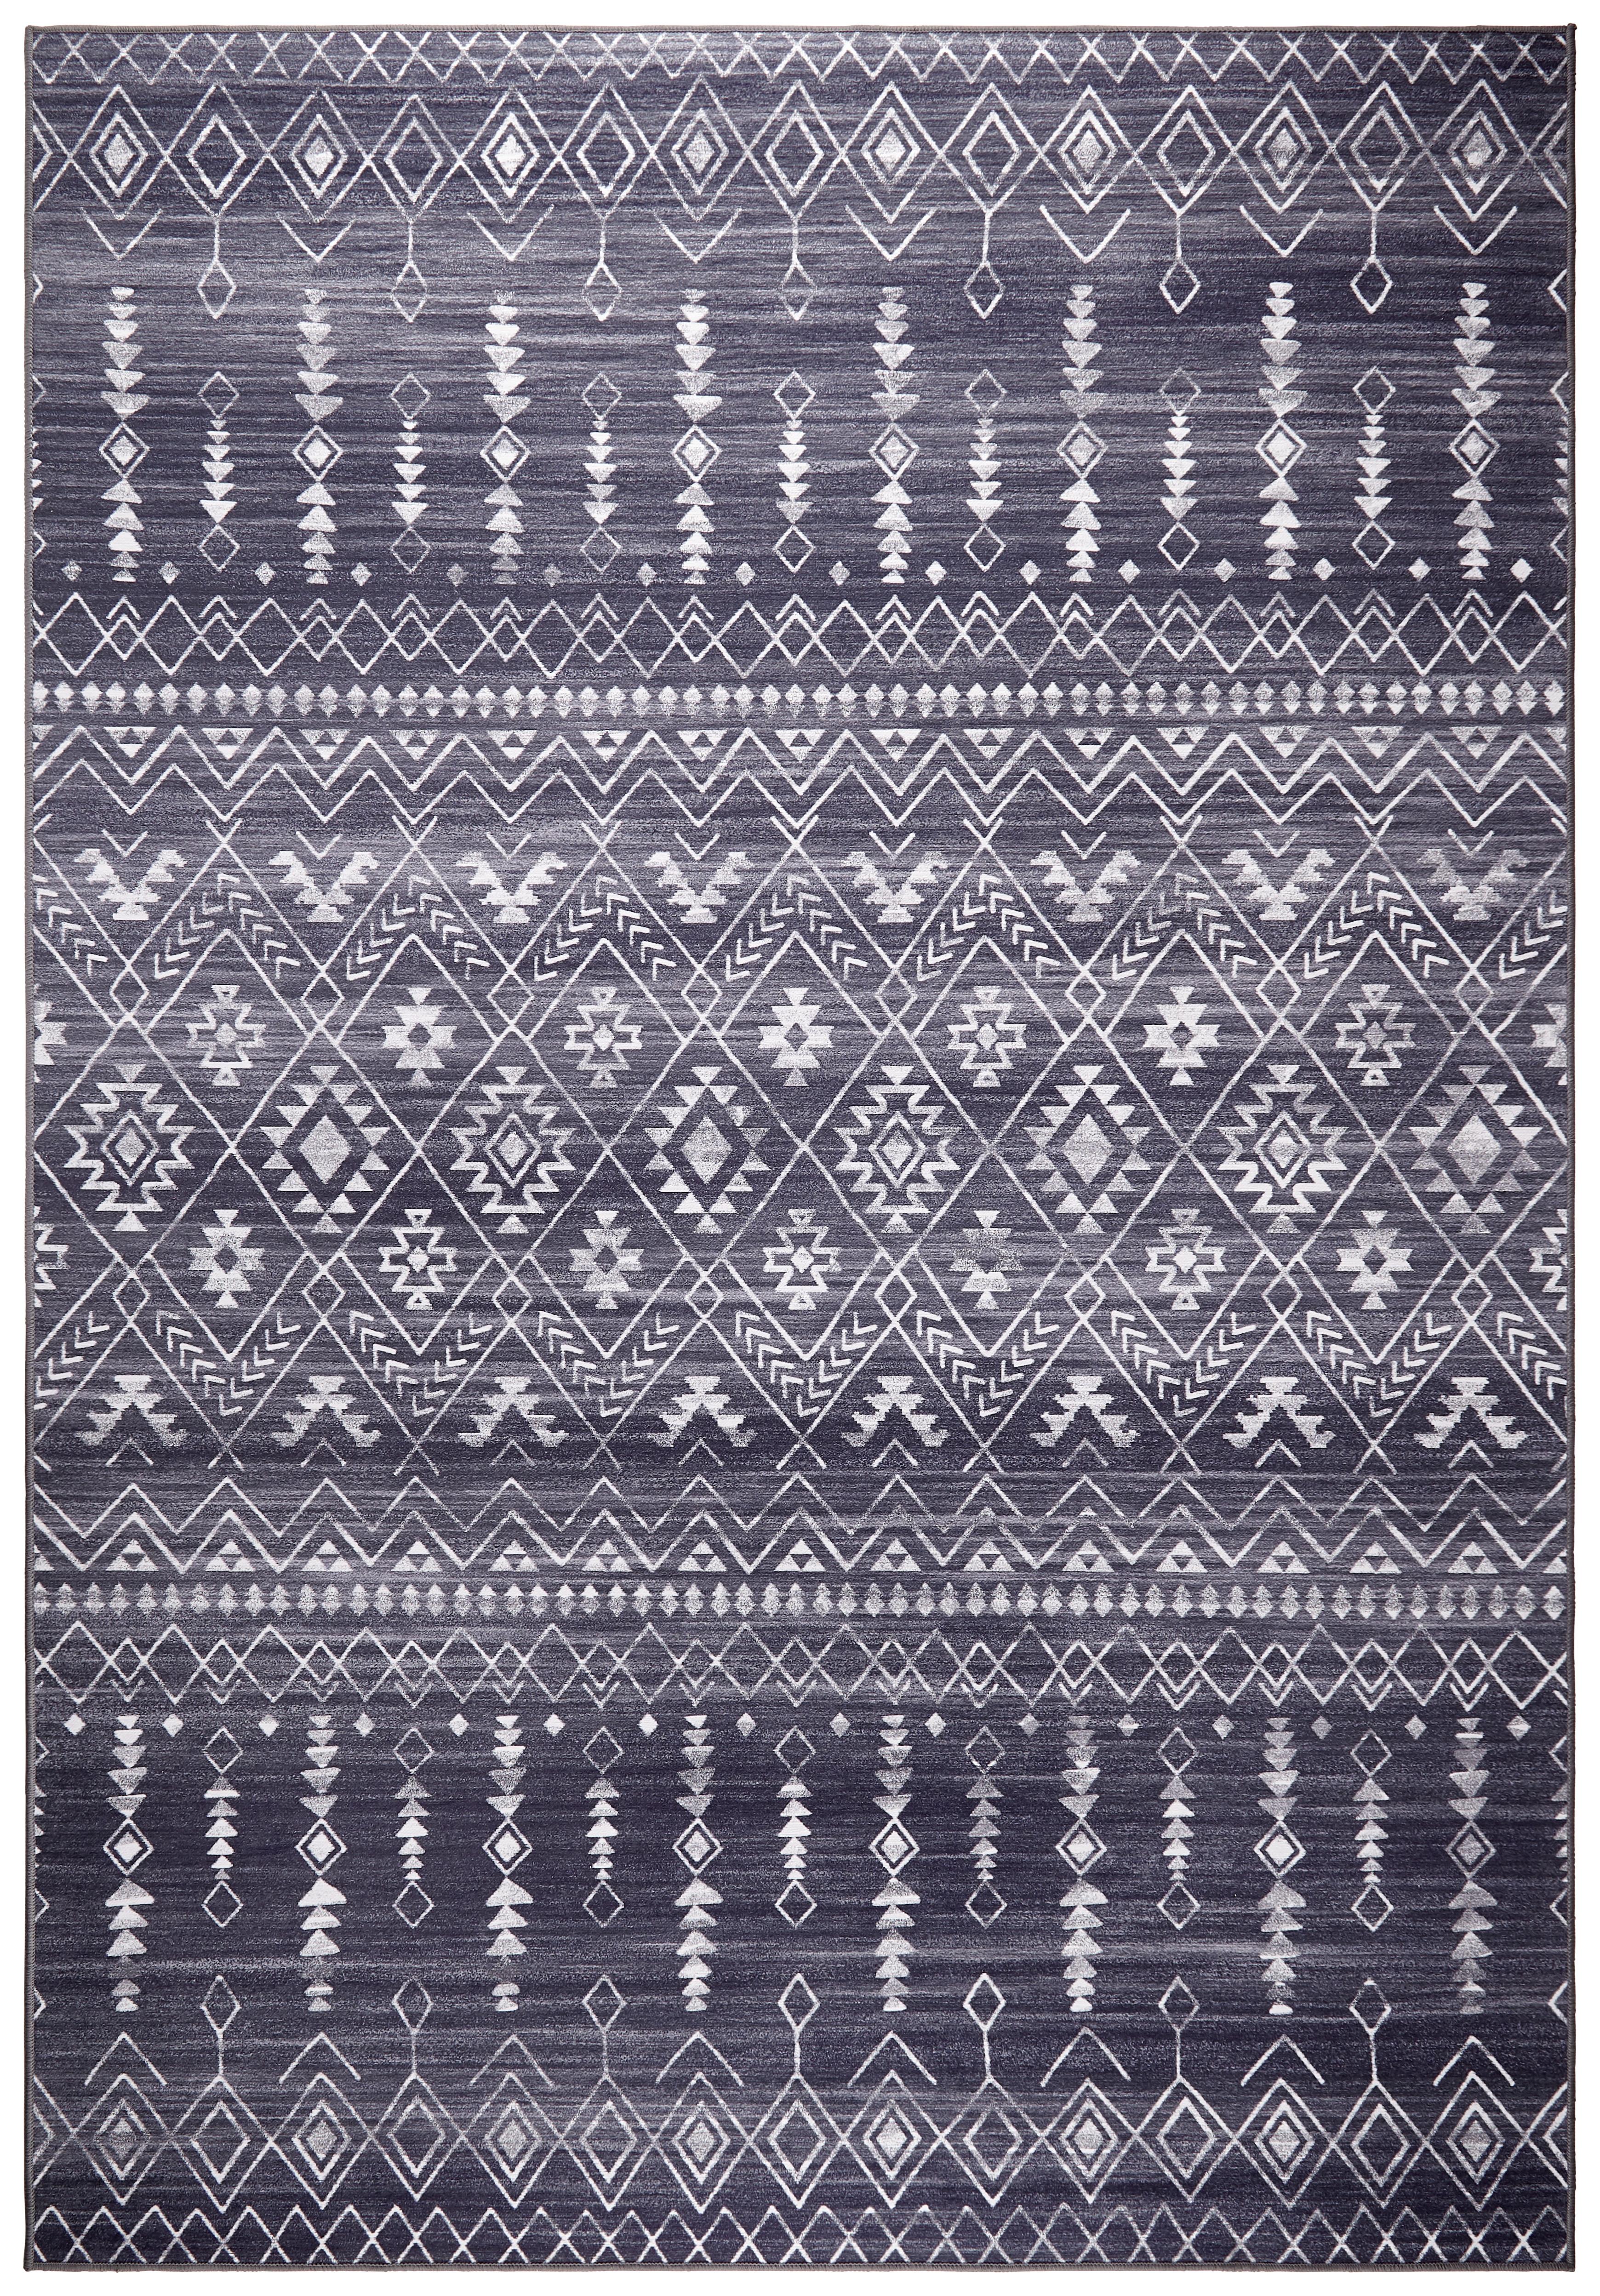 Webteppich Mississippi 2 in Schwarz ca. 120x170cm - Schwarz, Textil (120/170cm) - Modern Living